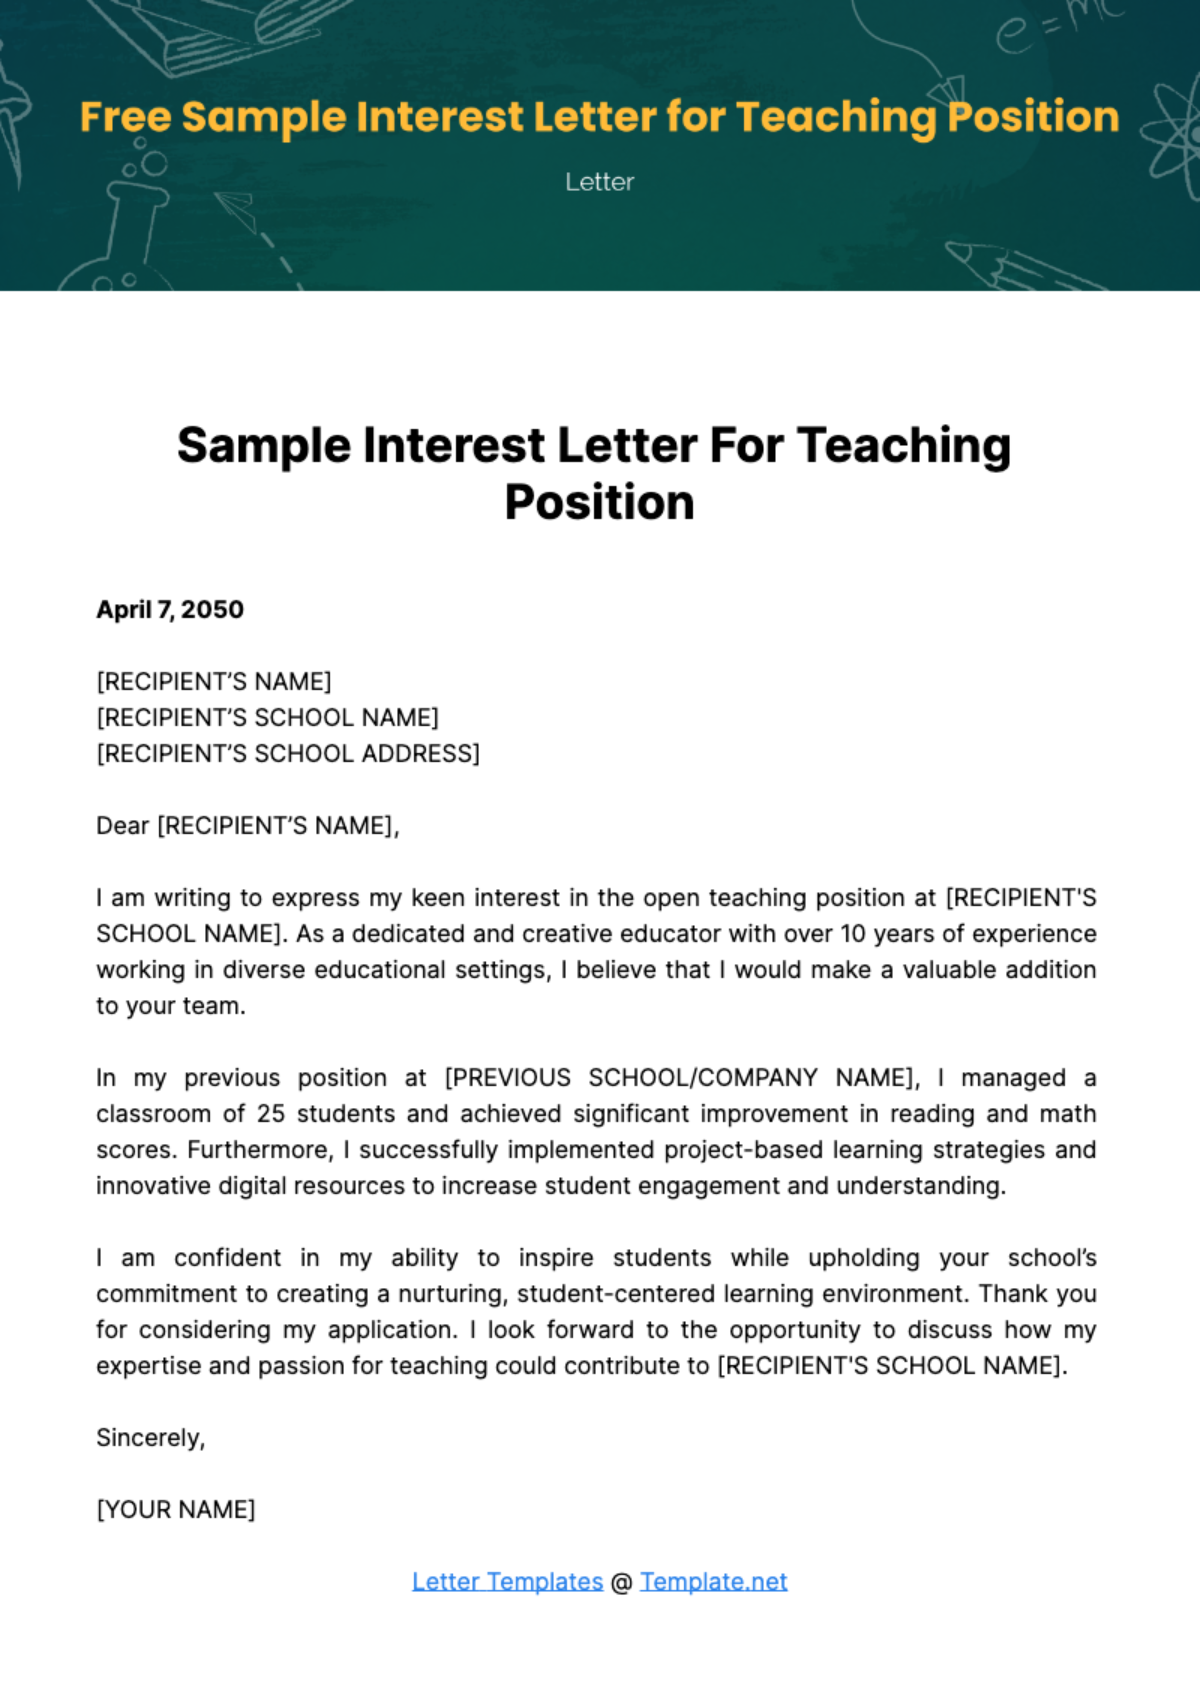 Sample Interest Letter for Teaching Position Template